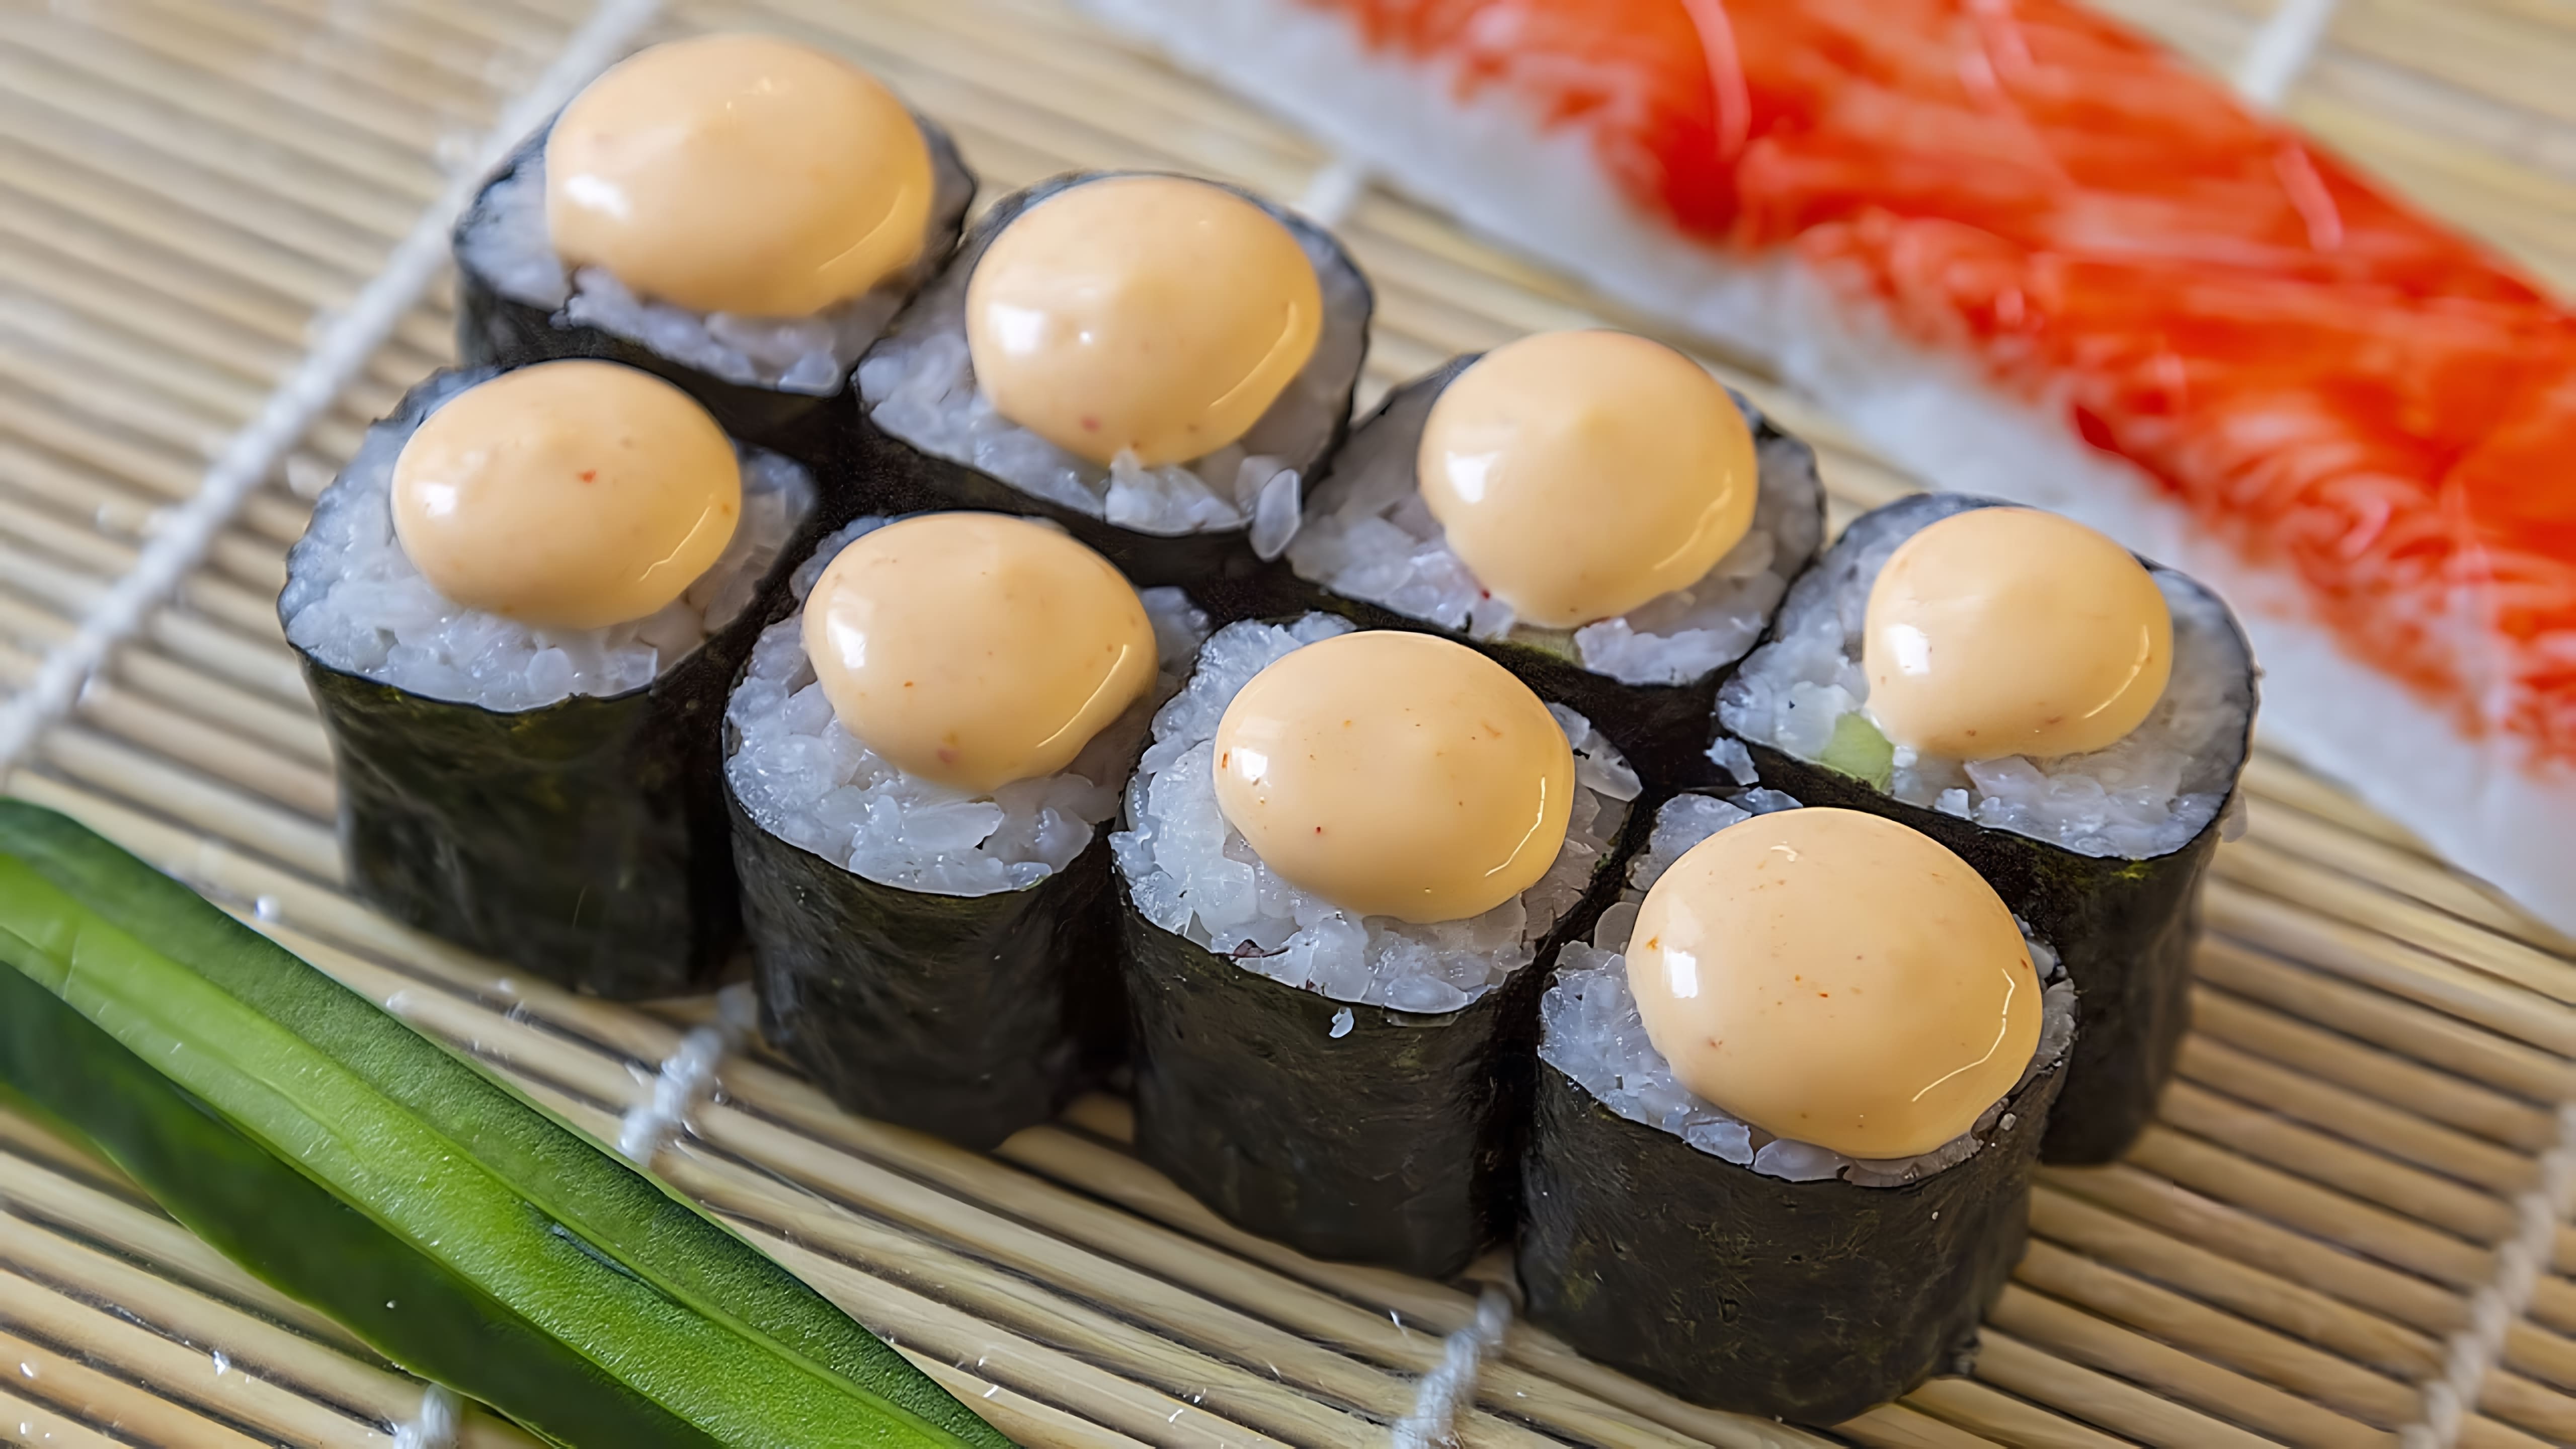 Макизуши или роллы маки - одни из самых простых суши, которые можно приготовить дома, используя основные ингредиенты, такие как рис, водоросли, огурец и крабовое мясо-имитацию